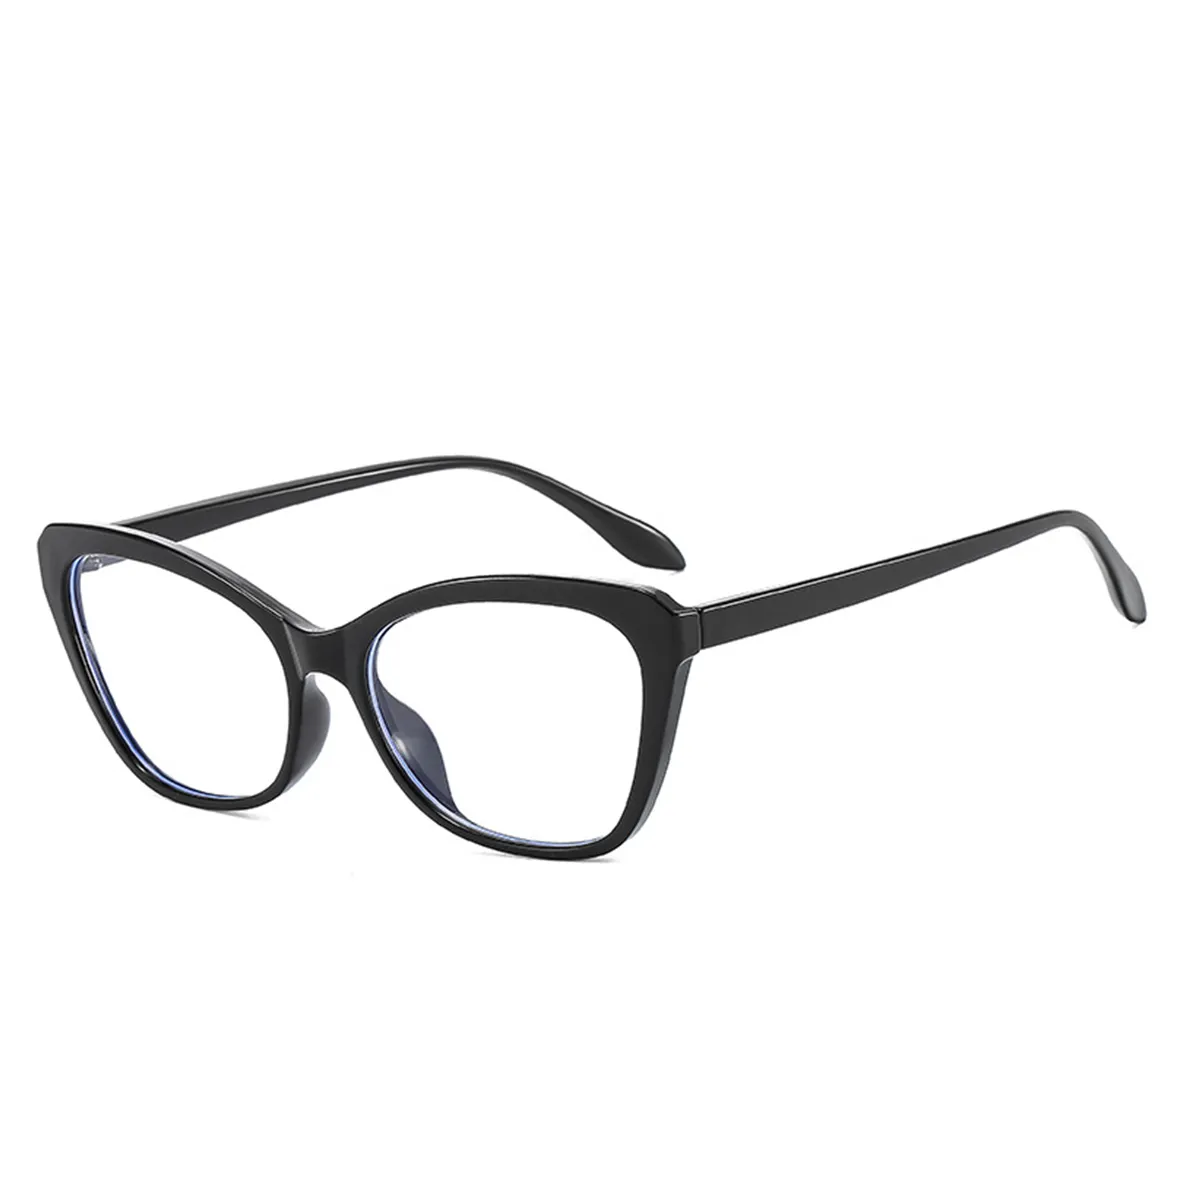 Cat-eye -  Black Glasses for Women